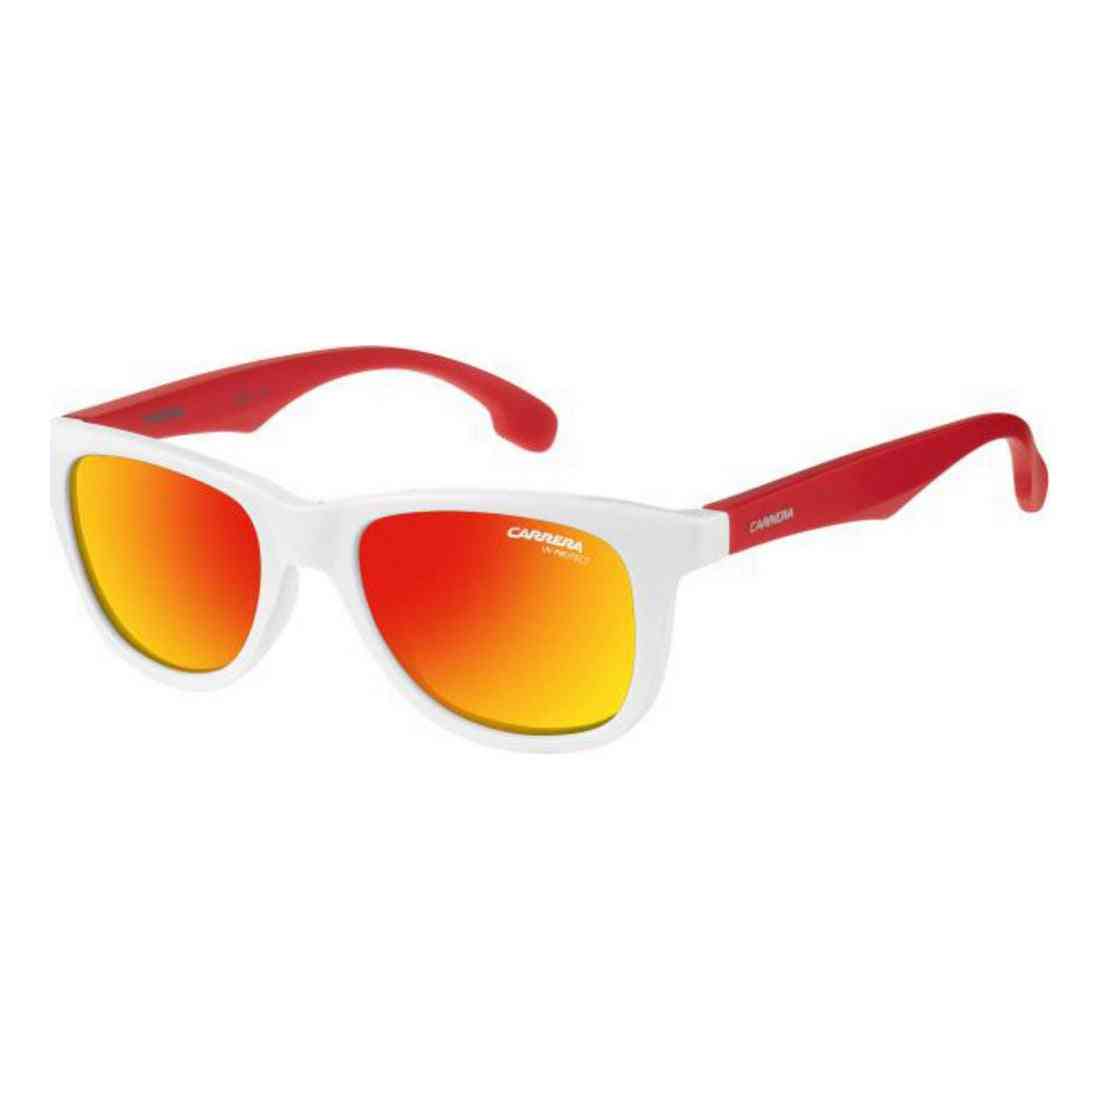 lunettes de soleil enfant carrera 20 5sk46uz blanc ø 46 mm rouge